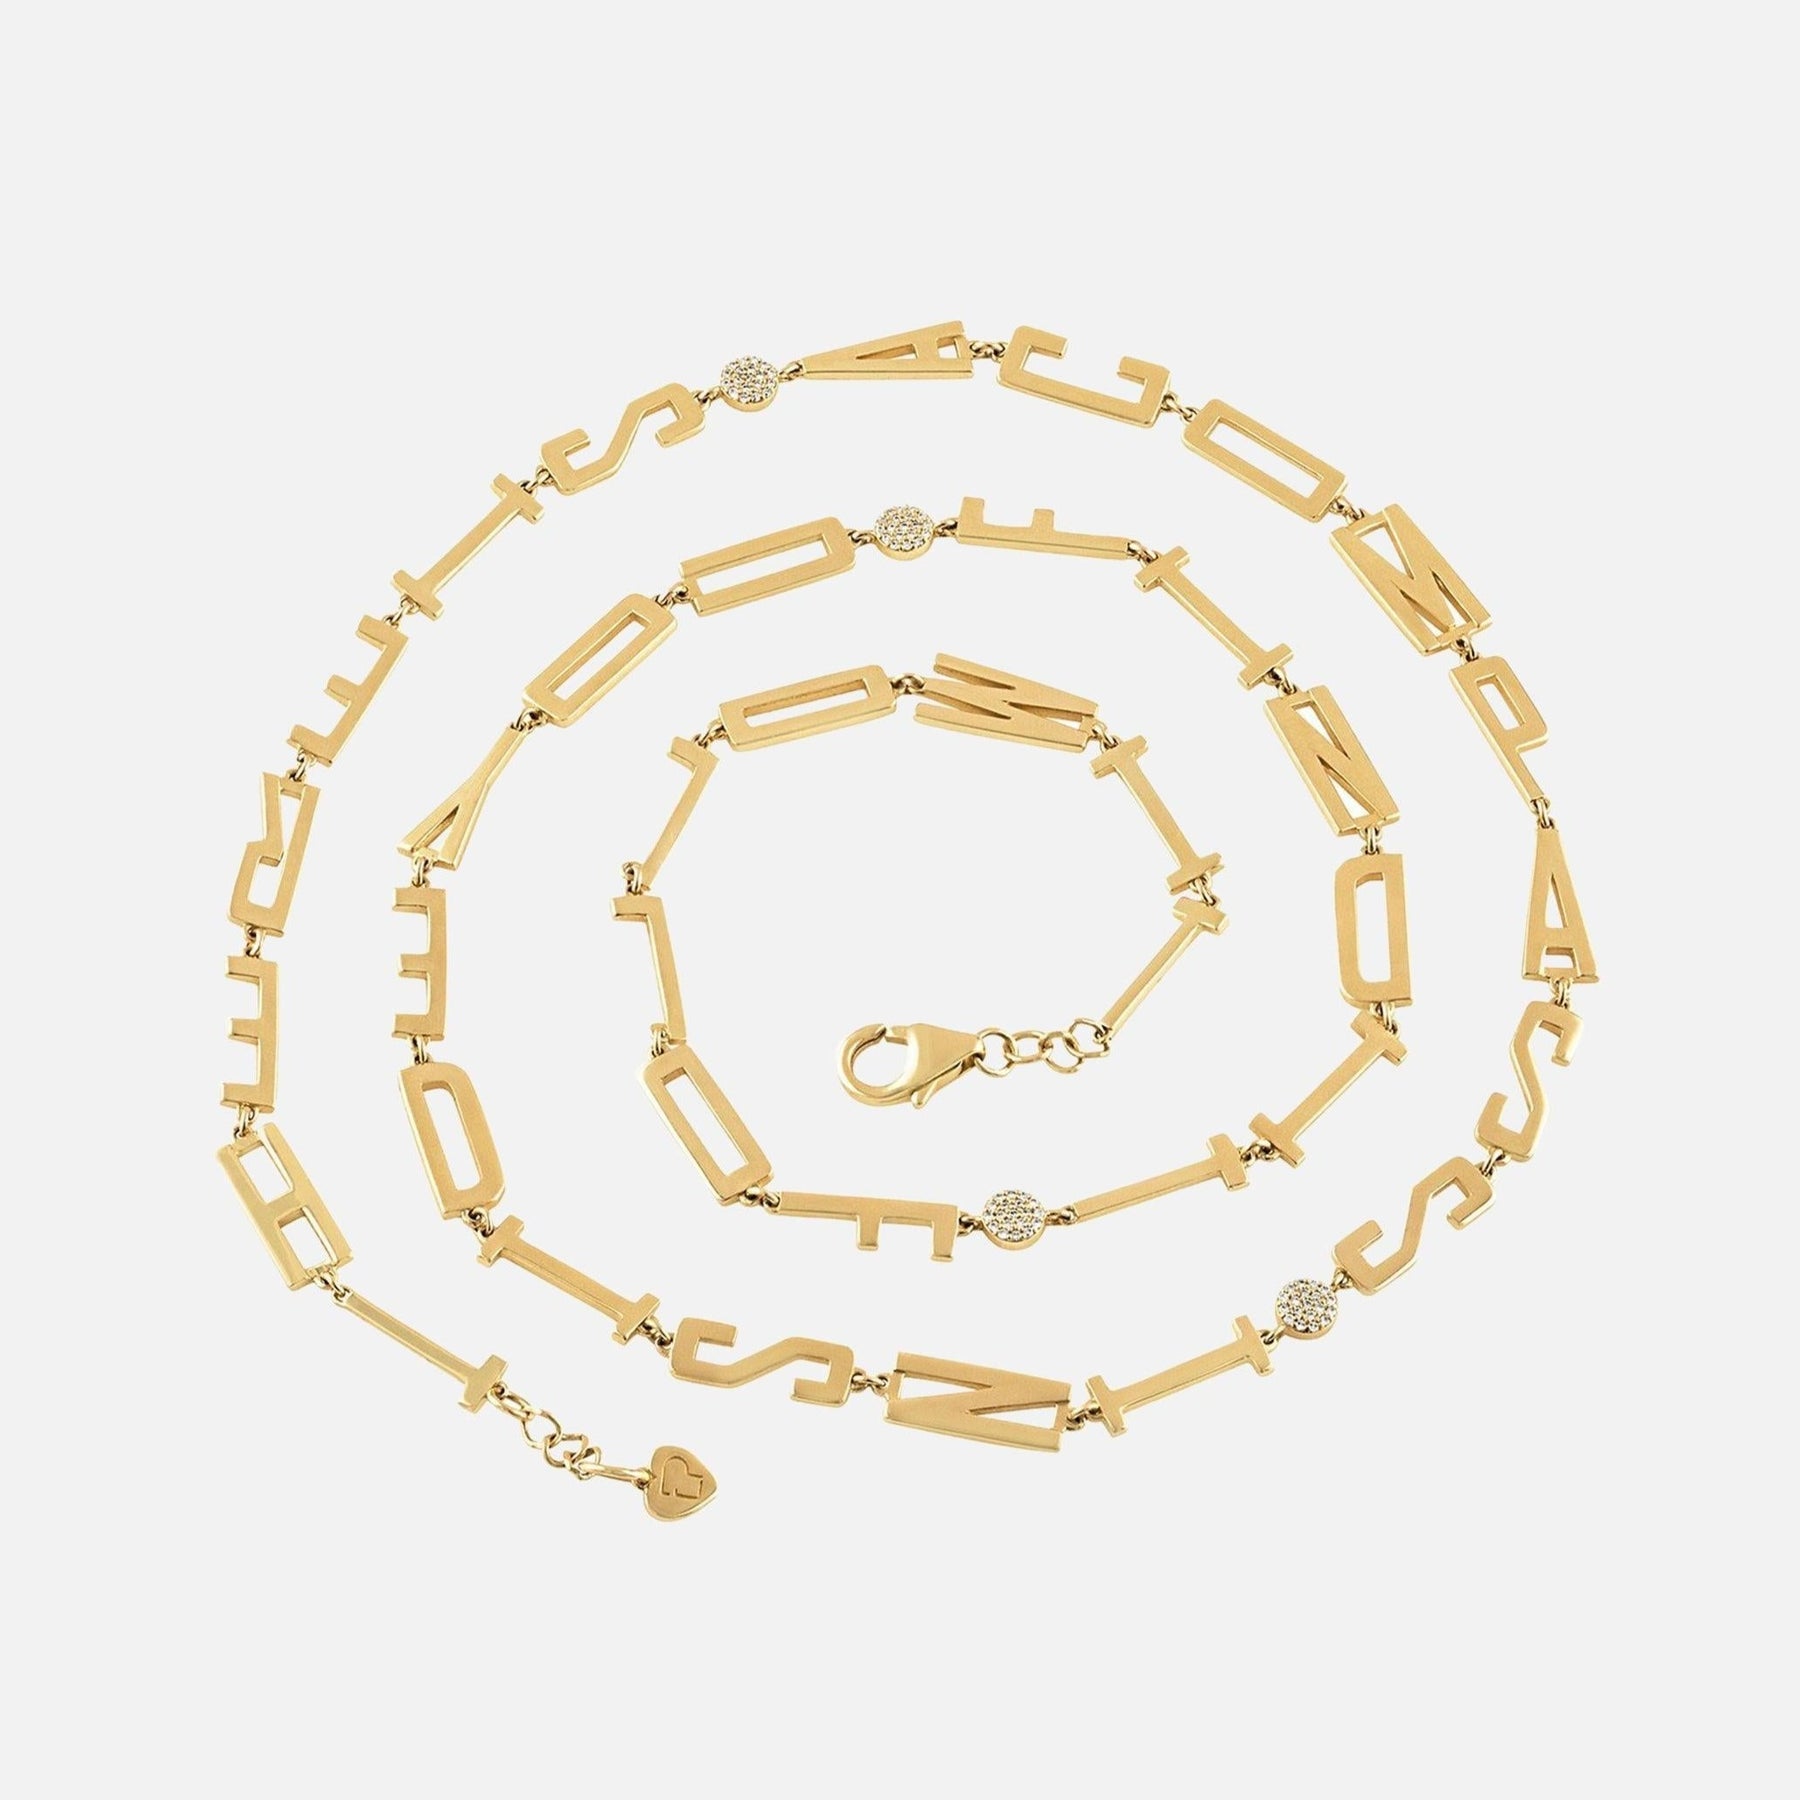 Eden Presley Golden Mantra Necklaces 9